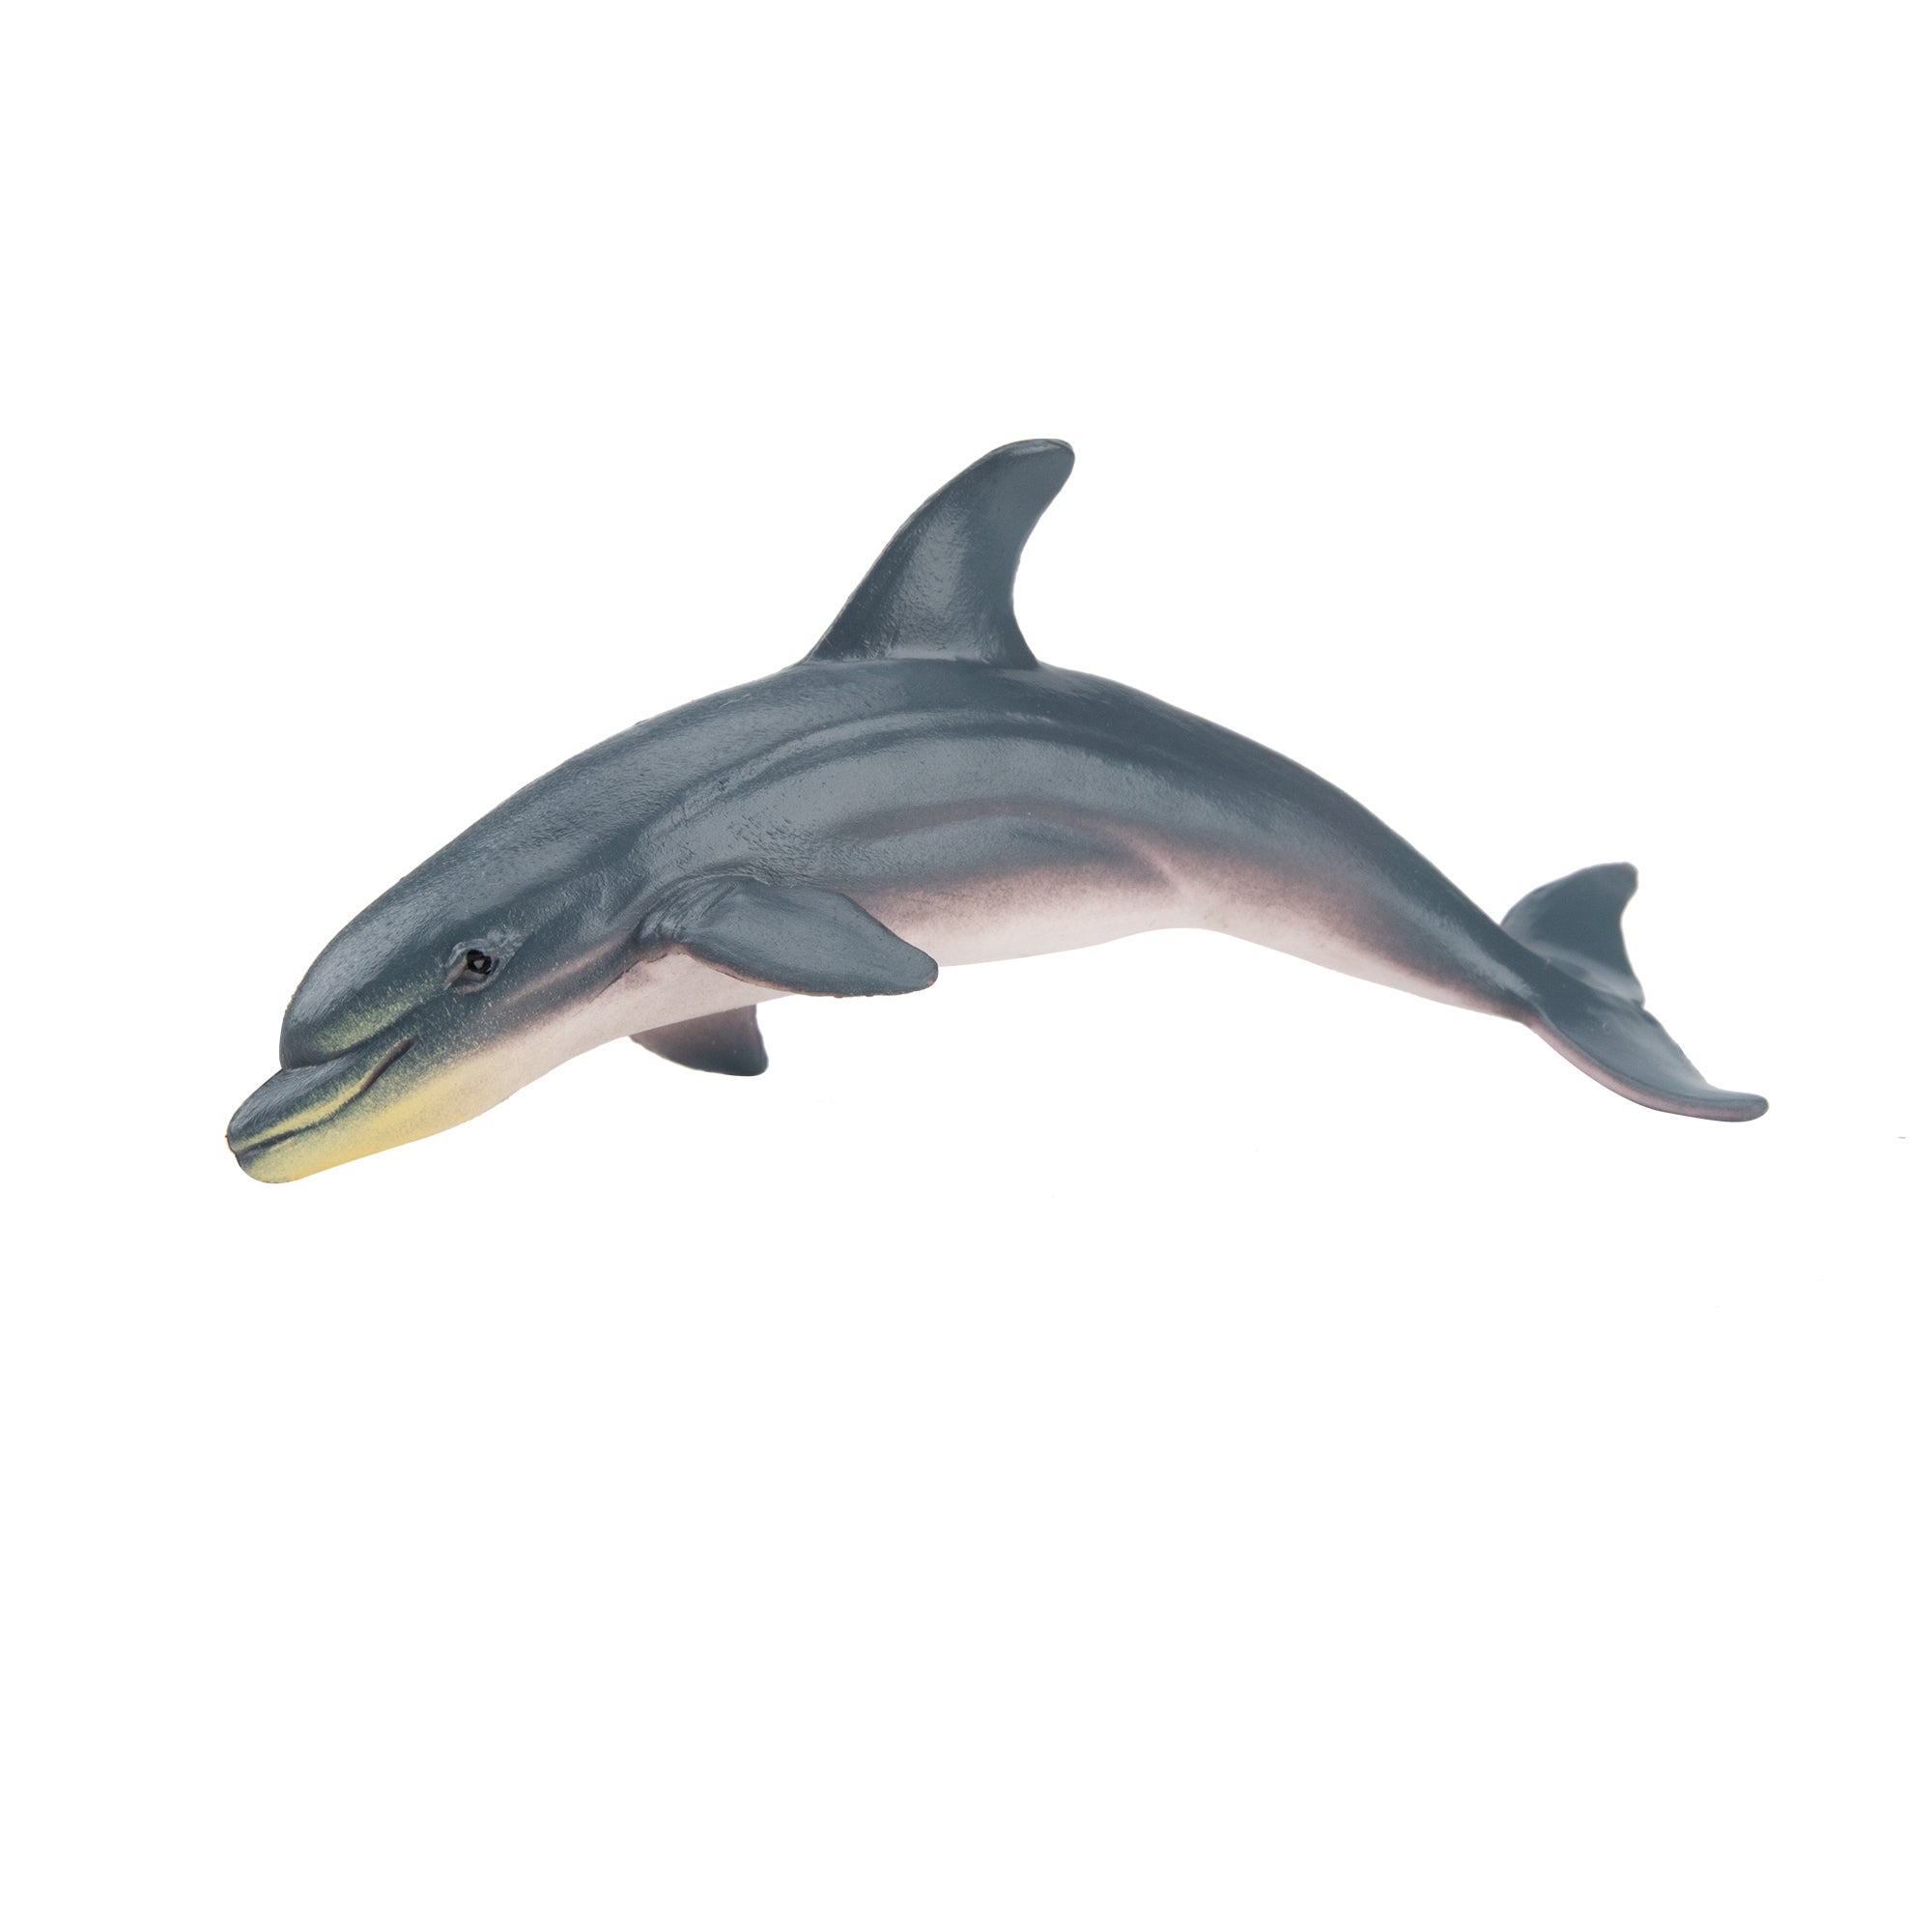 Toymany Dolphin Figurine Toy